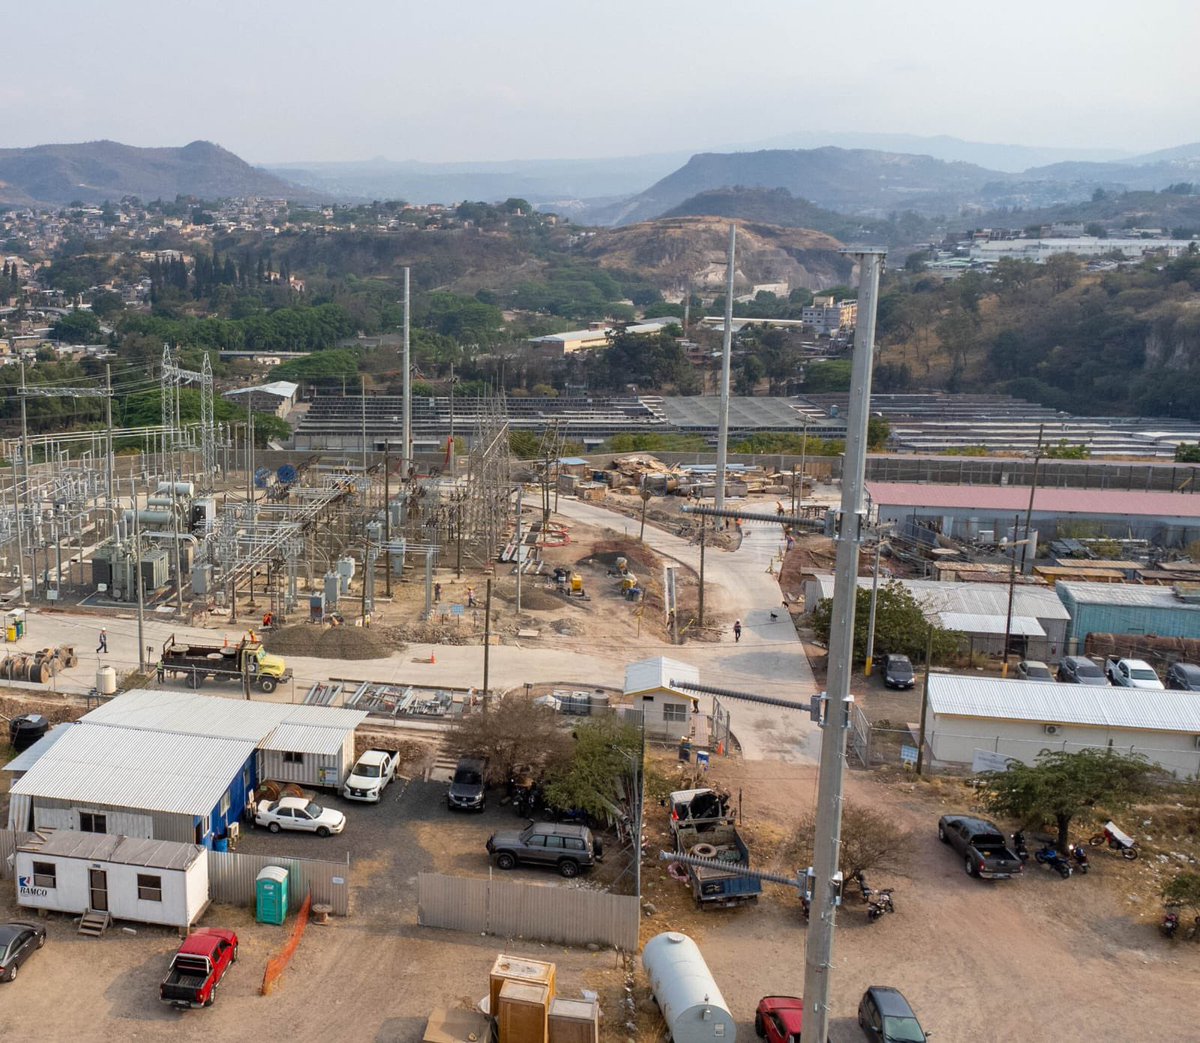 Ya a un 90% de avance los trabajos de ampliación de las Subestación Miraflores en Tegucigalpa. Con una inversión mayor a los 130 millones de lempiras, sumado a la Línea de Transmisión; vendrán a mejorar significativamente la calidad del servicio en varios hospitales cercanos y…